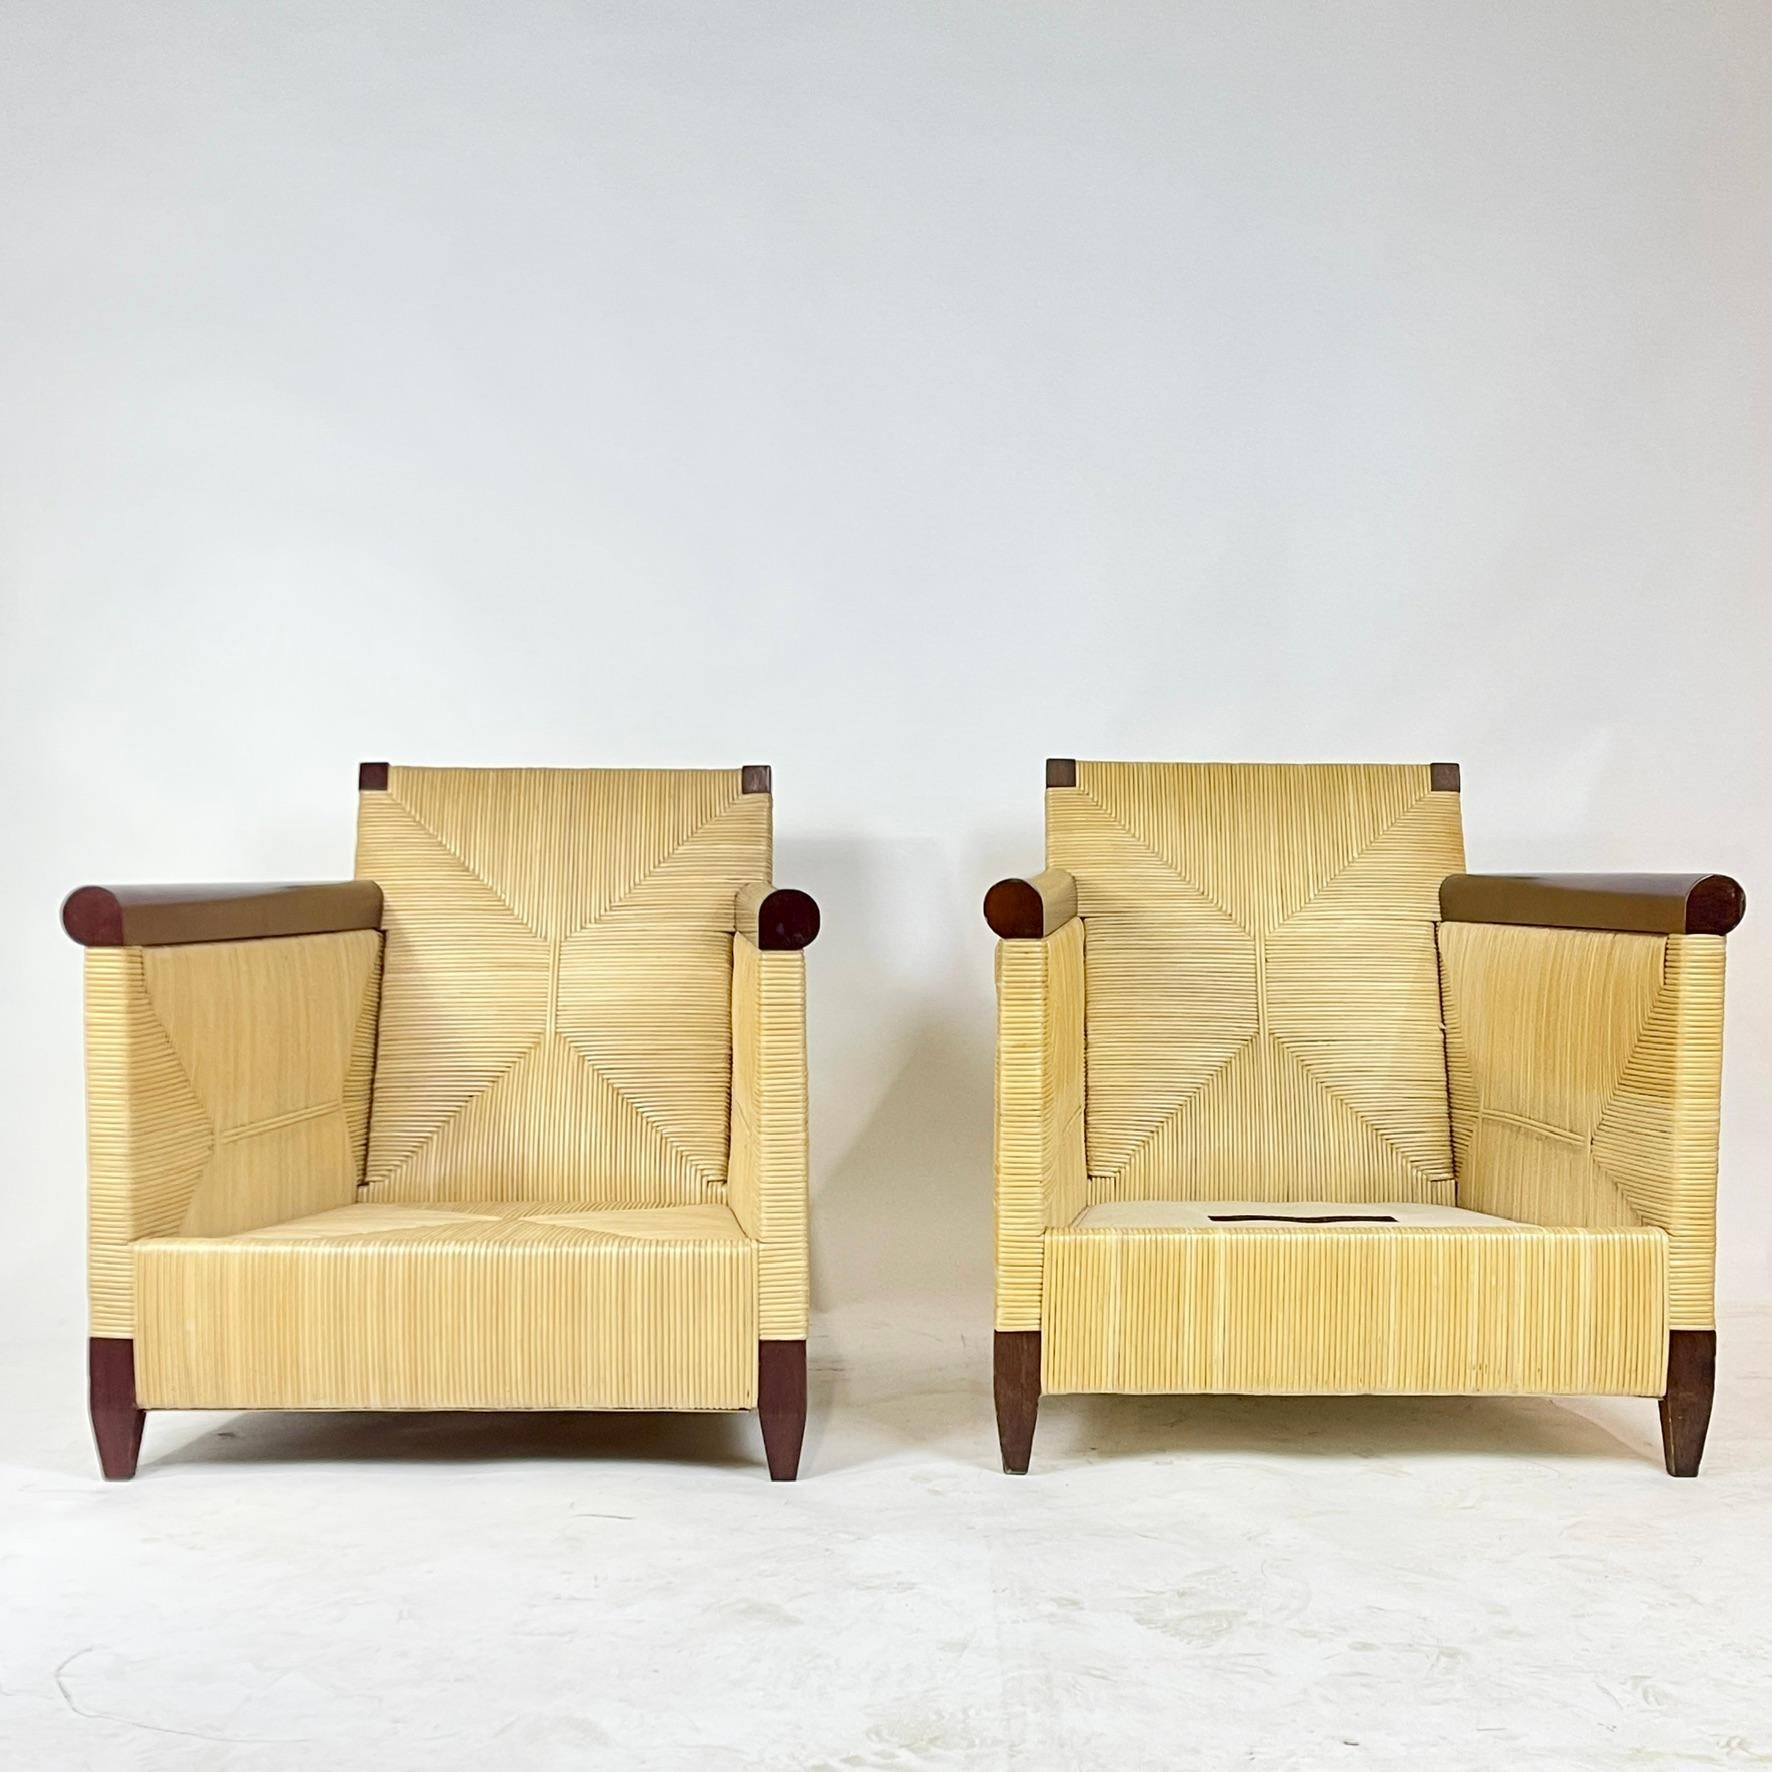 Paire absolument magnifique de chaises longues Coastal vintage conçues par John Hutton pour Donghia. Les chaises sont imprimées sur la base et l'une d'entre elles porte une étiquette de Donghia sous le coussin d'assise. Ces chaises sont absolument